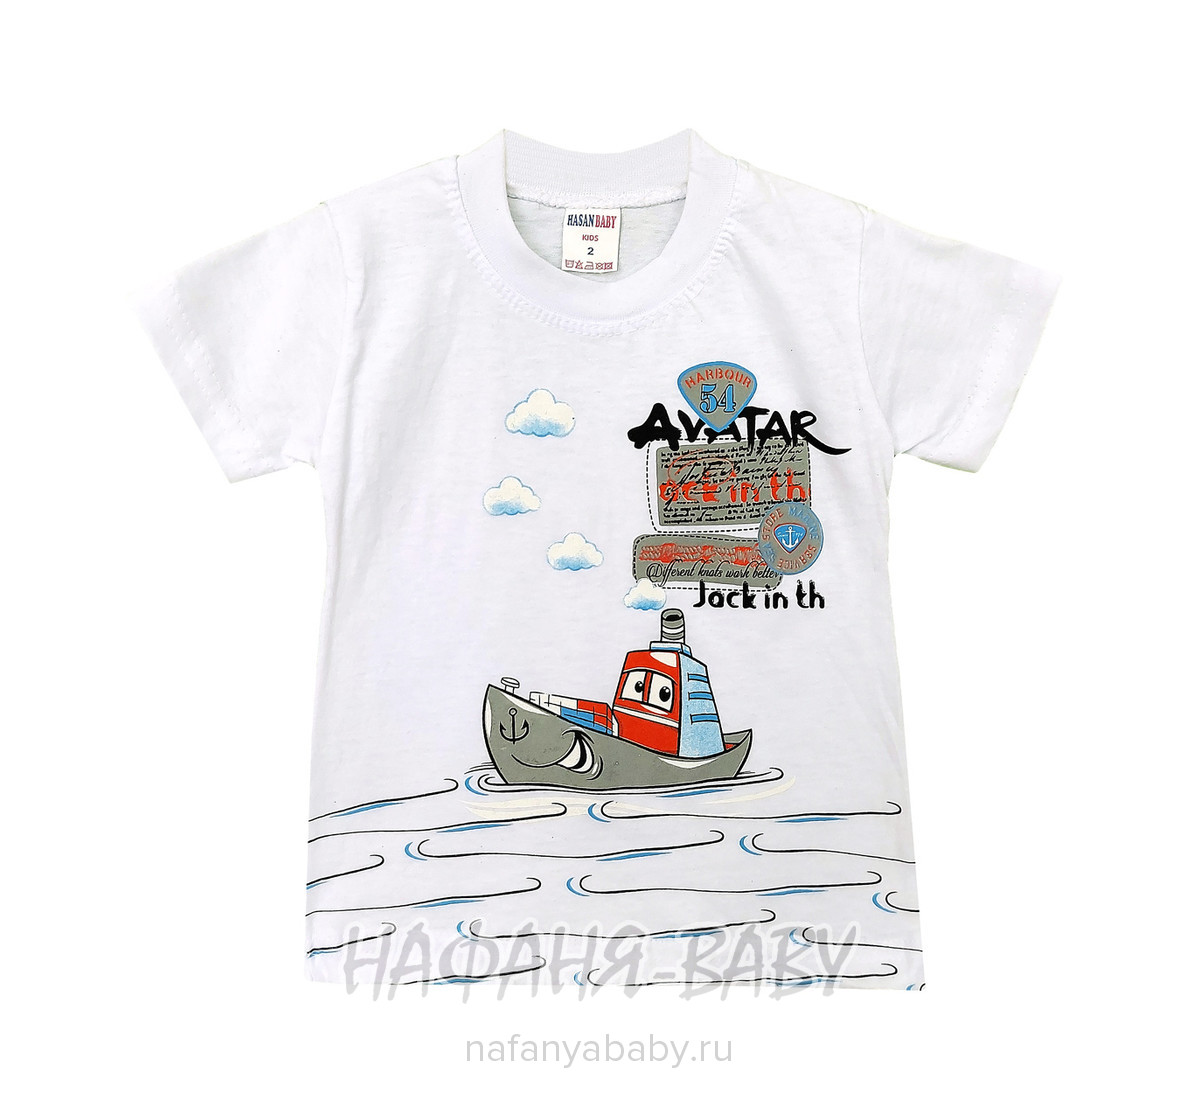 Детская футболка HASAN Bebe, купить в интернет магазине Нафаня. арт: 6213.